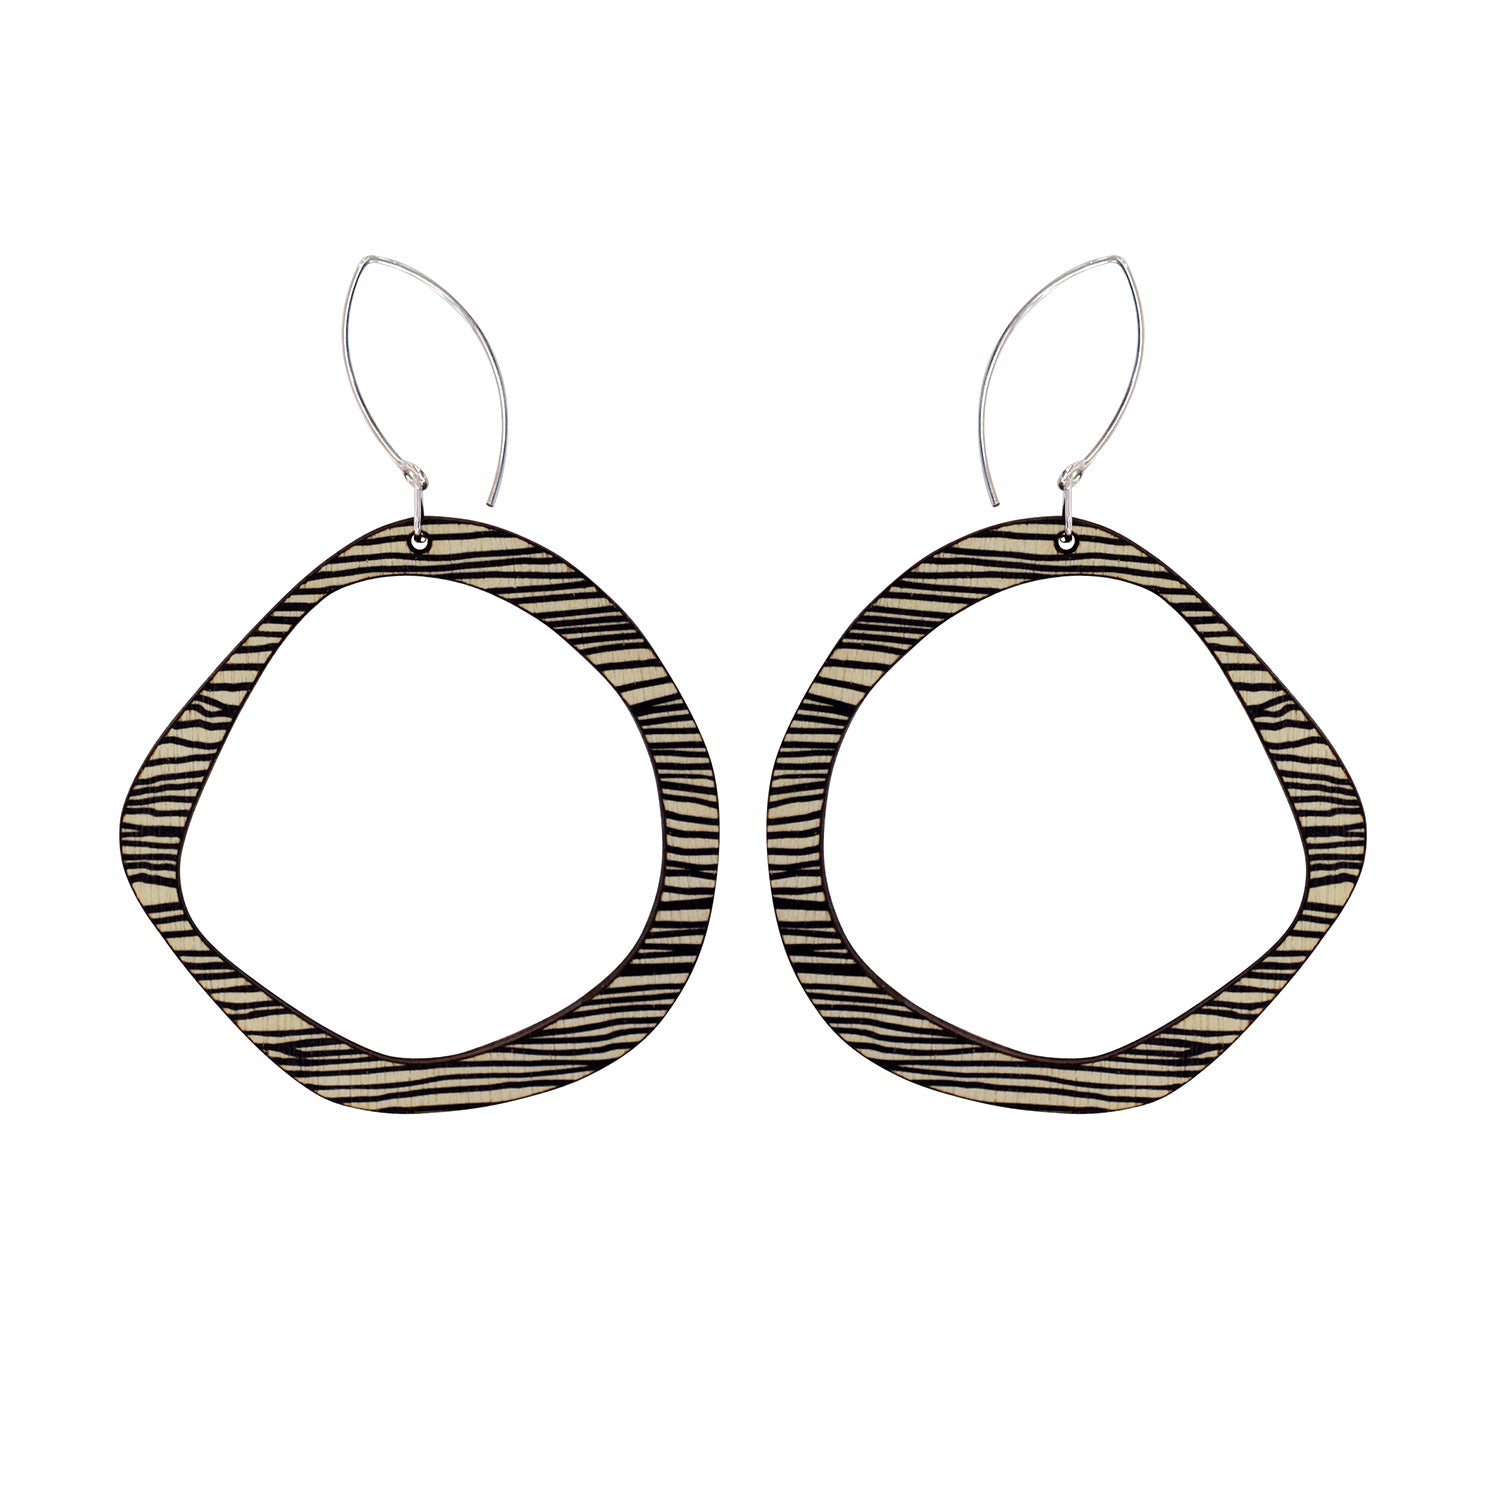 Retro earrings in thin black stripe